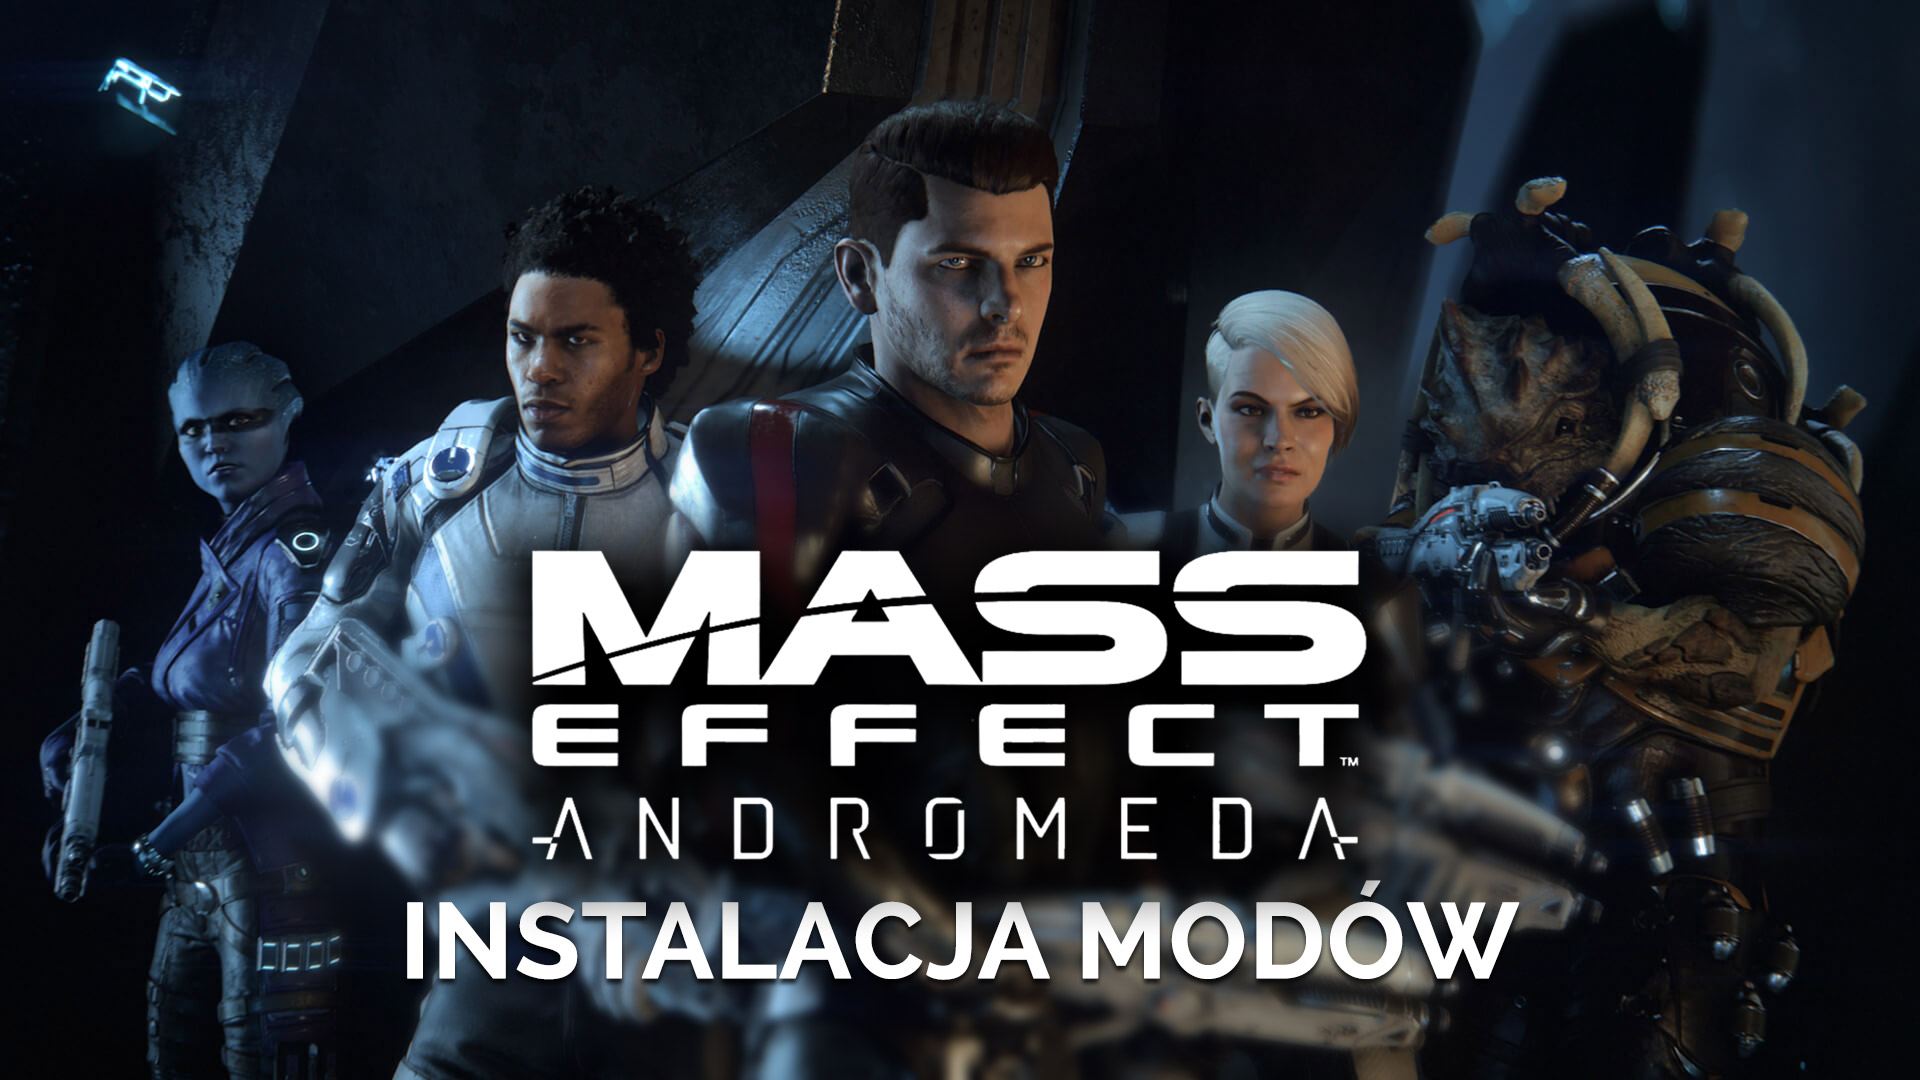 Моды для Mass Effect Andromeda - где скачать и как установить?